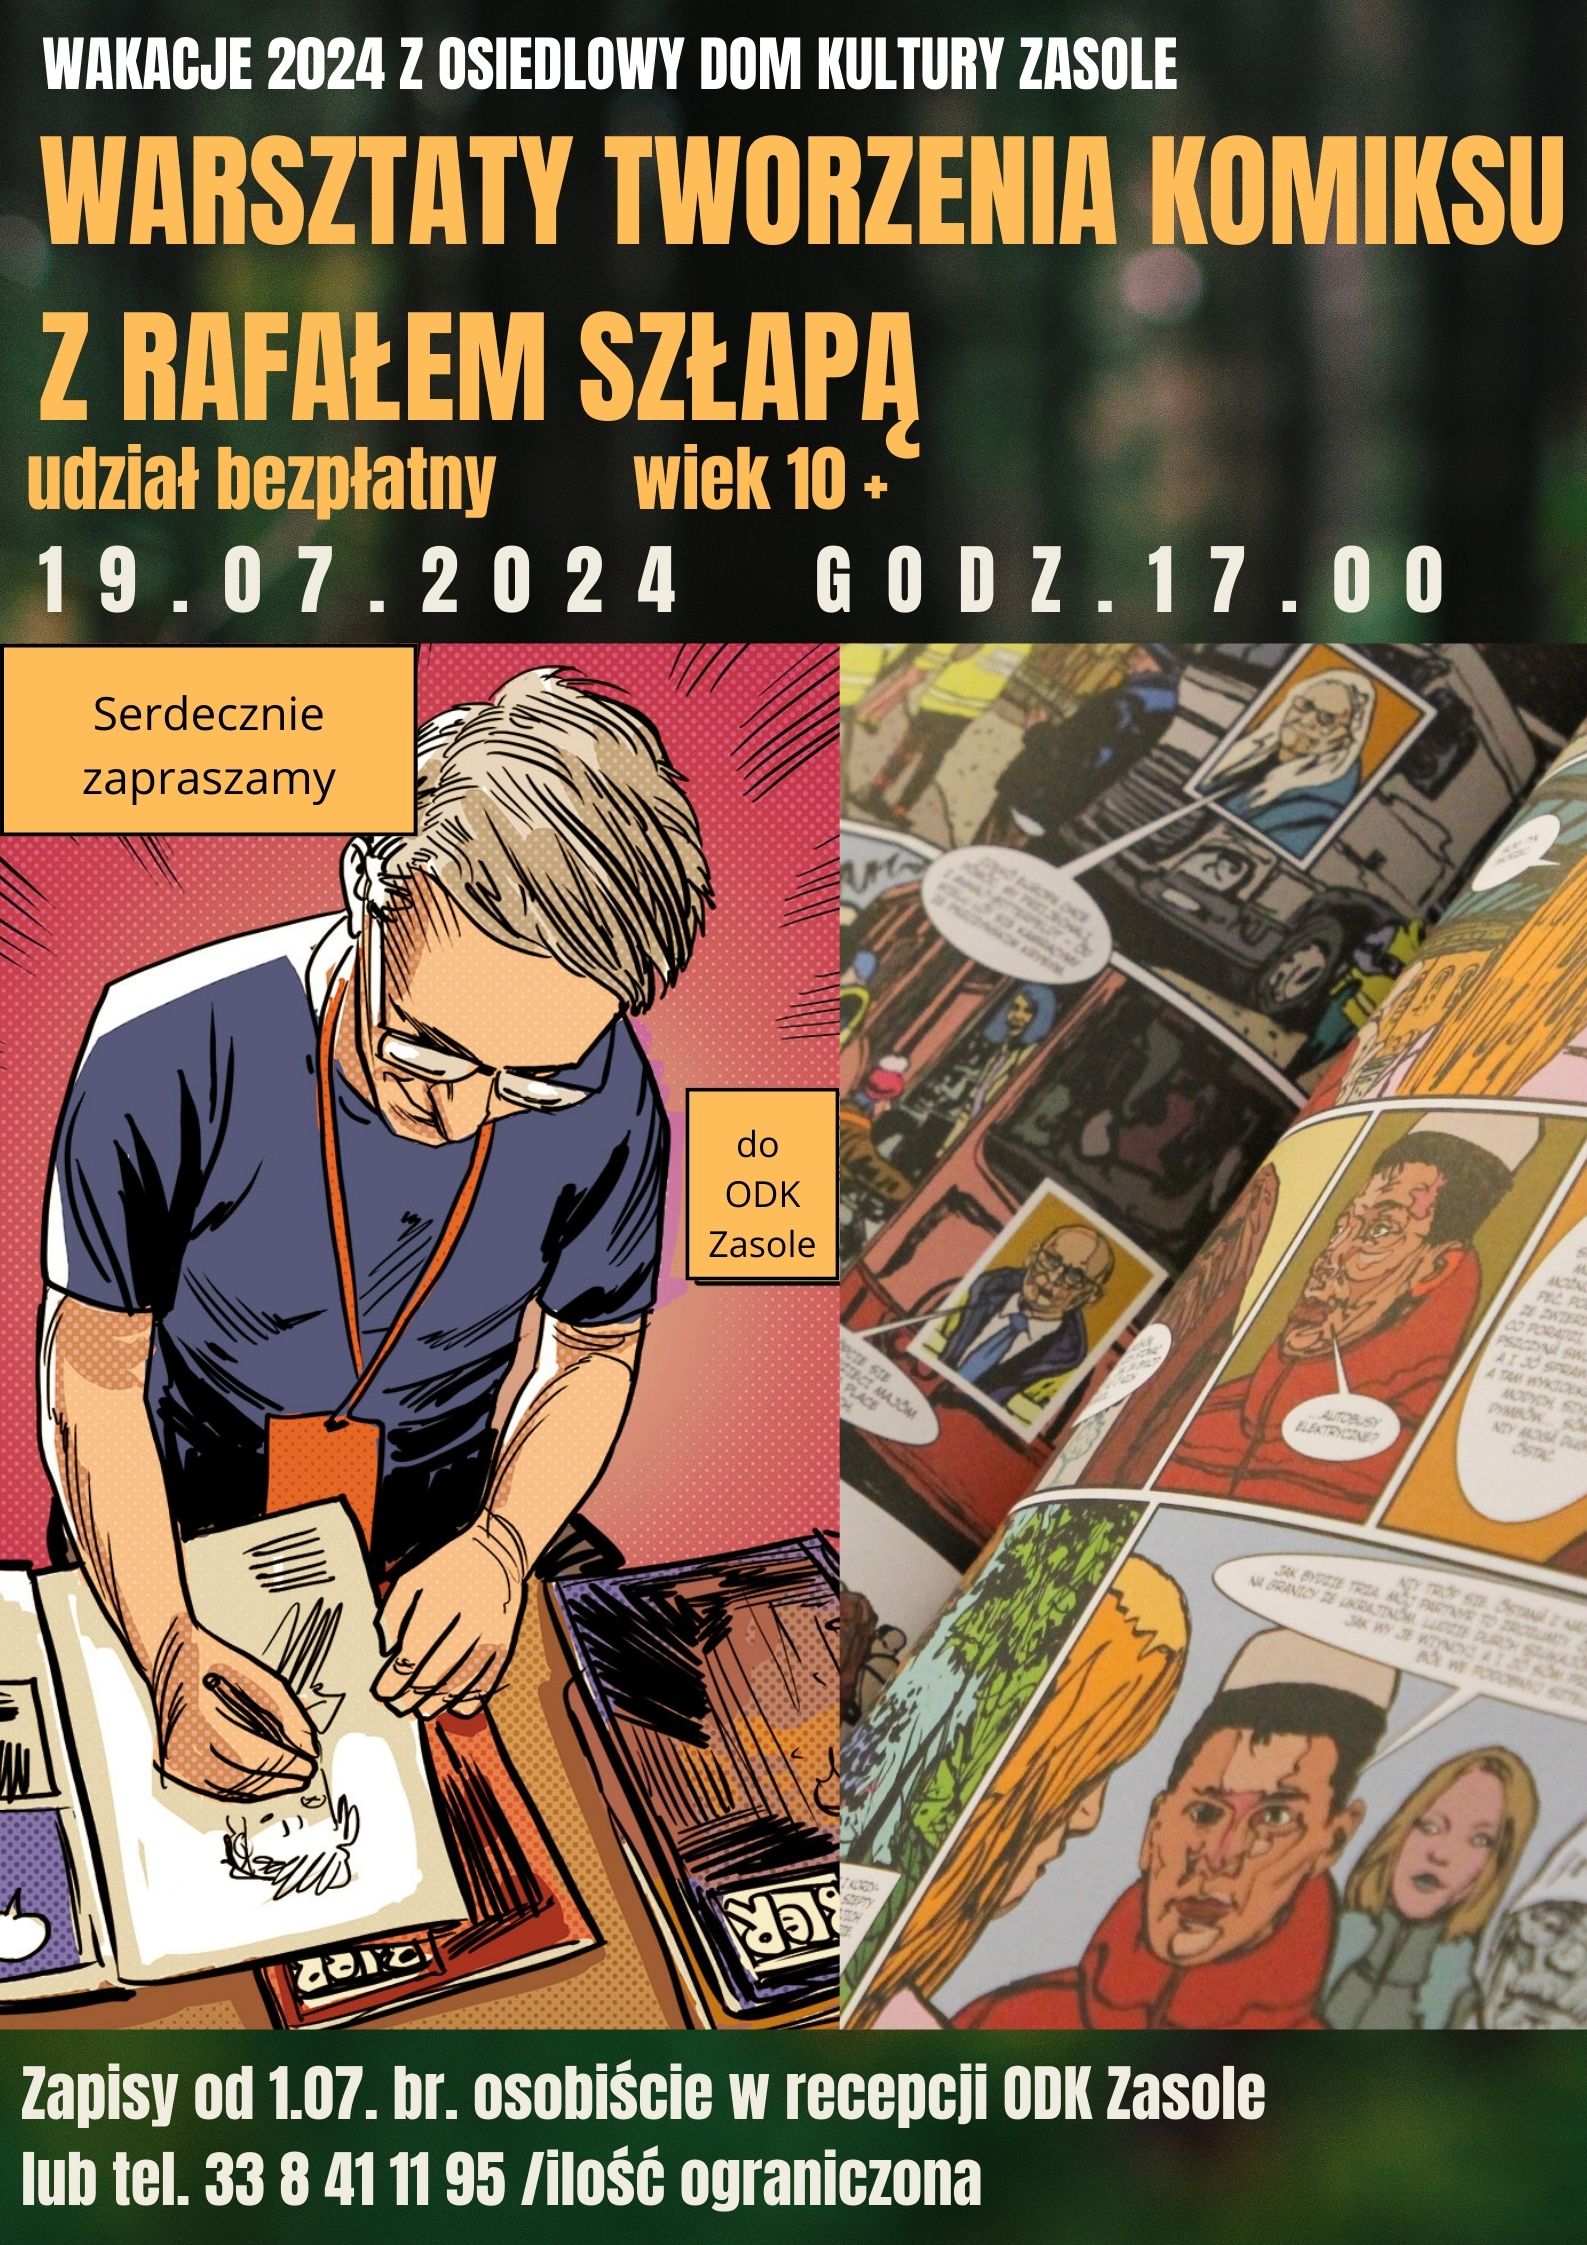 na plakacie komiksowa postać autora Rafała Szłapy i zdj strony komiksu a takze info o warsztatach